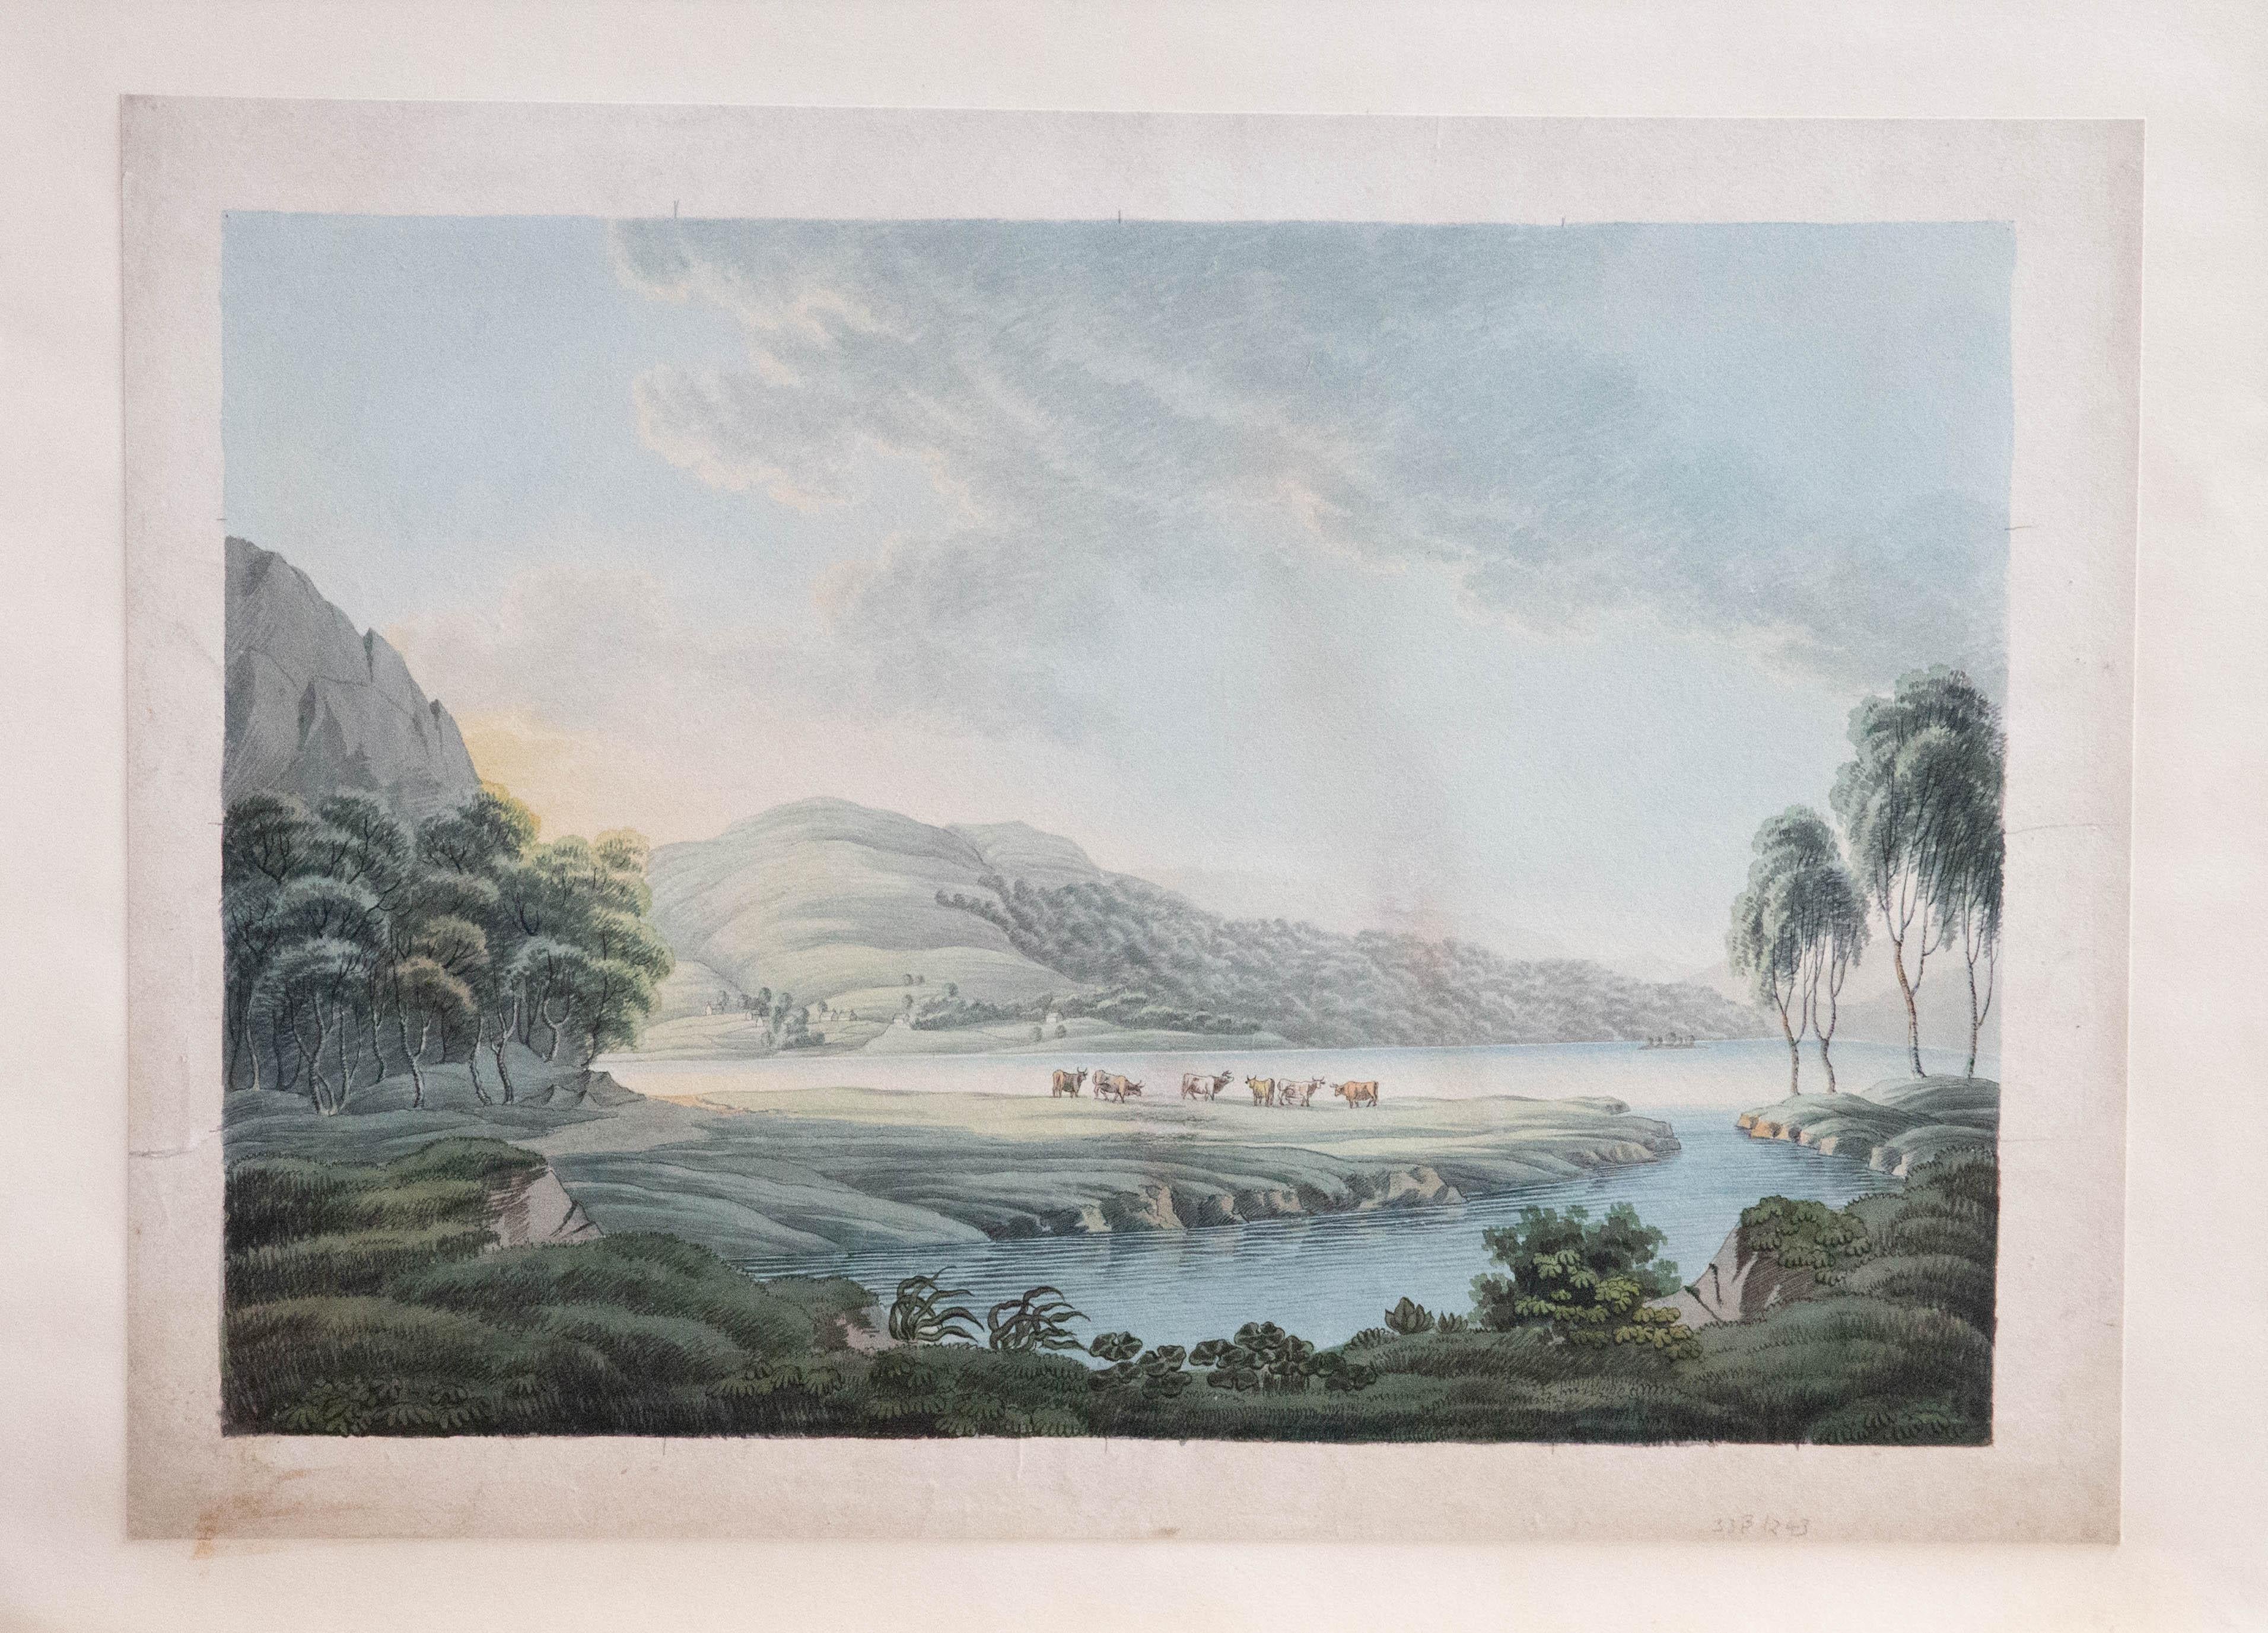 Ein feines traditionelles Aquarell aus dem späten 19. Jahrhundert mit feinen Feder- und Tuschedetails. Die Szene zeigt einen weitläufigen See, umgeben von sanften grünen Hügeln. Die Sonne scheint sanft hinter einem Felsvorsprung auf der linken Seite